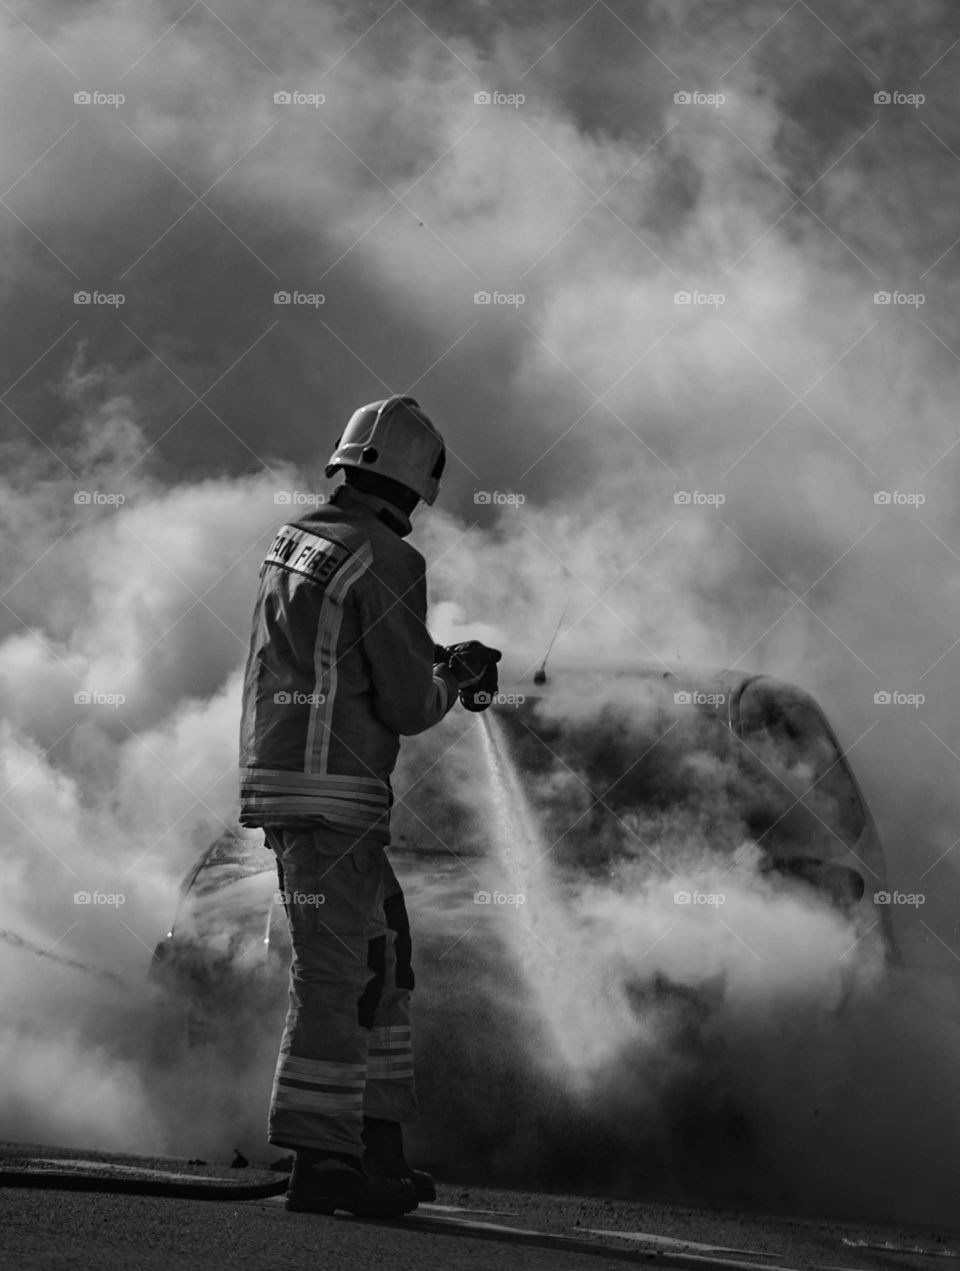 Firefighter tackling a car fire. 